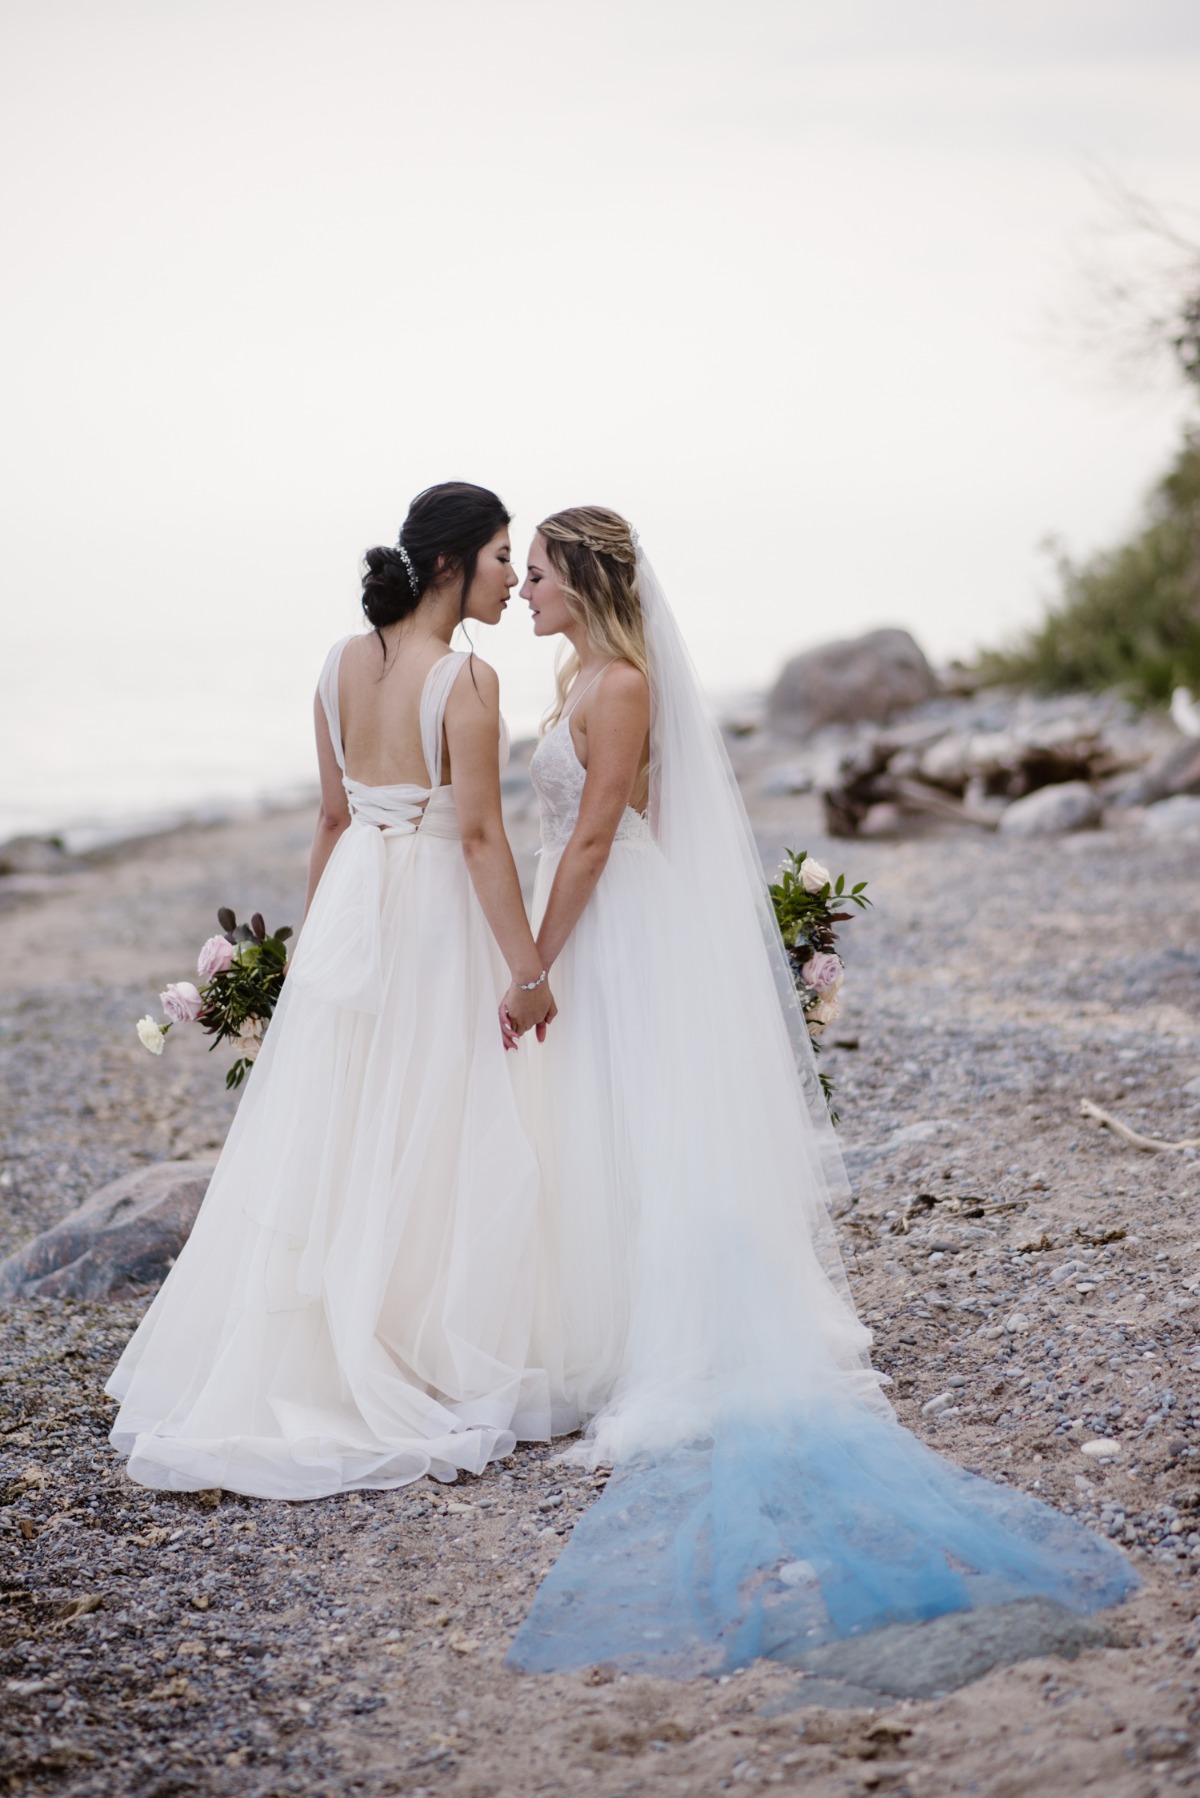 Lesbian beach wedding ideas